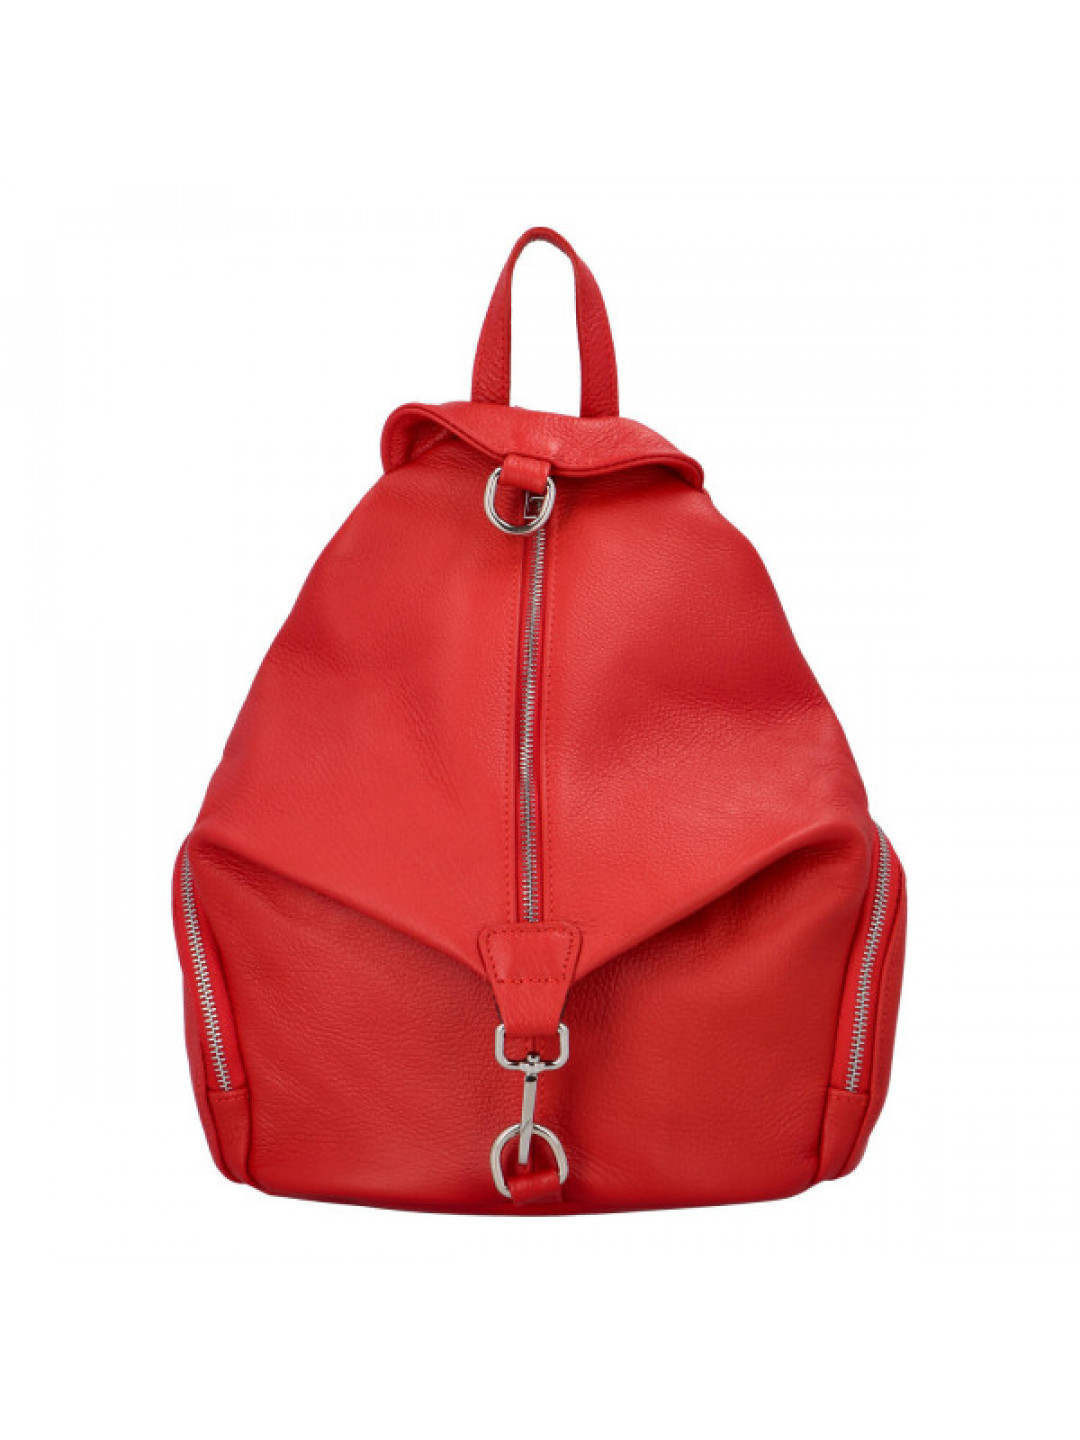 Stylový kožený dámský batoh Sonia červená